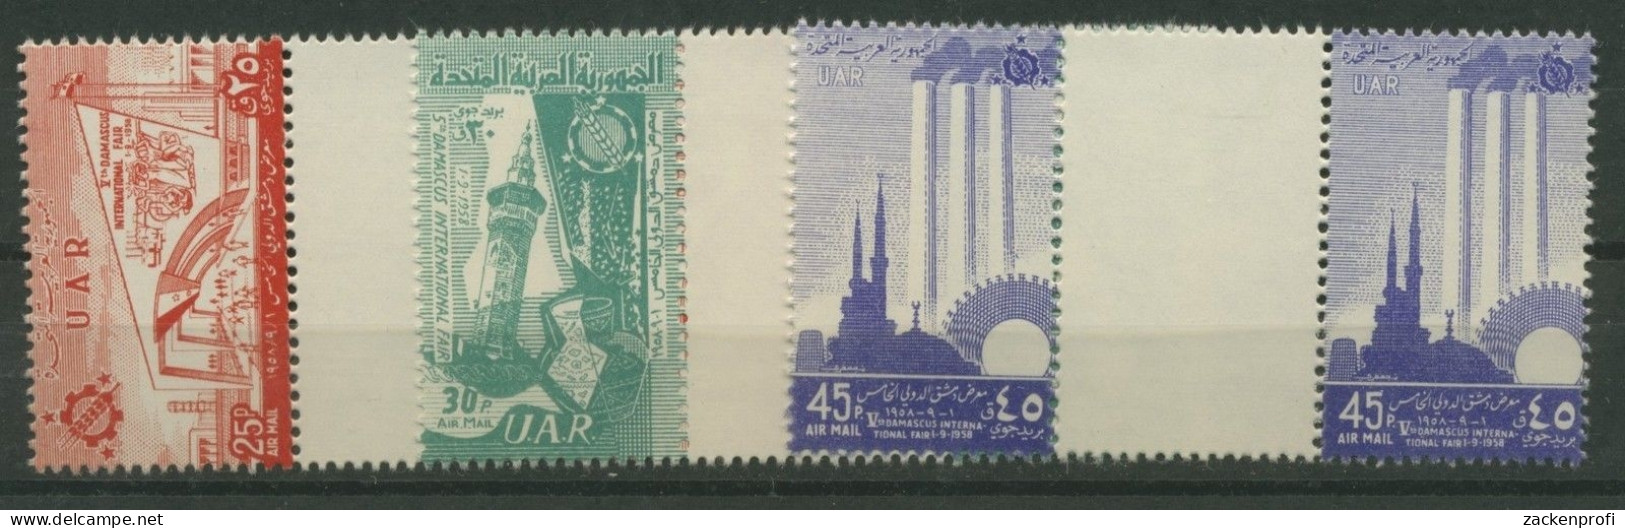 Syrien VAR 1958 Messe Damaskus V9/11 Mit Zwischensteg Postfrisch (G1788) - Syrie